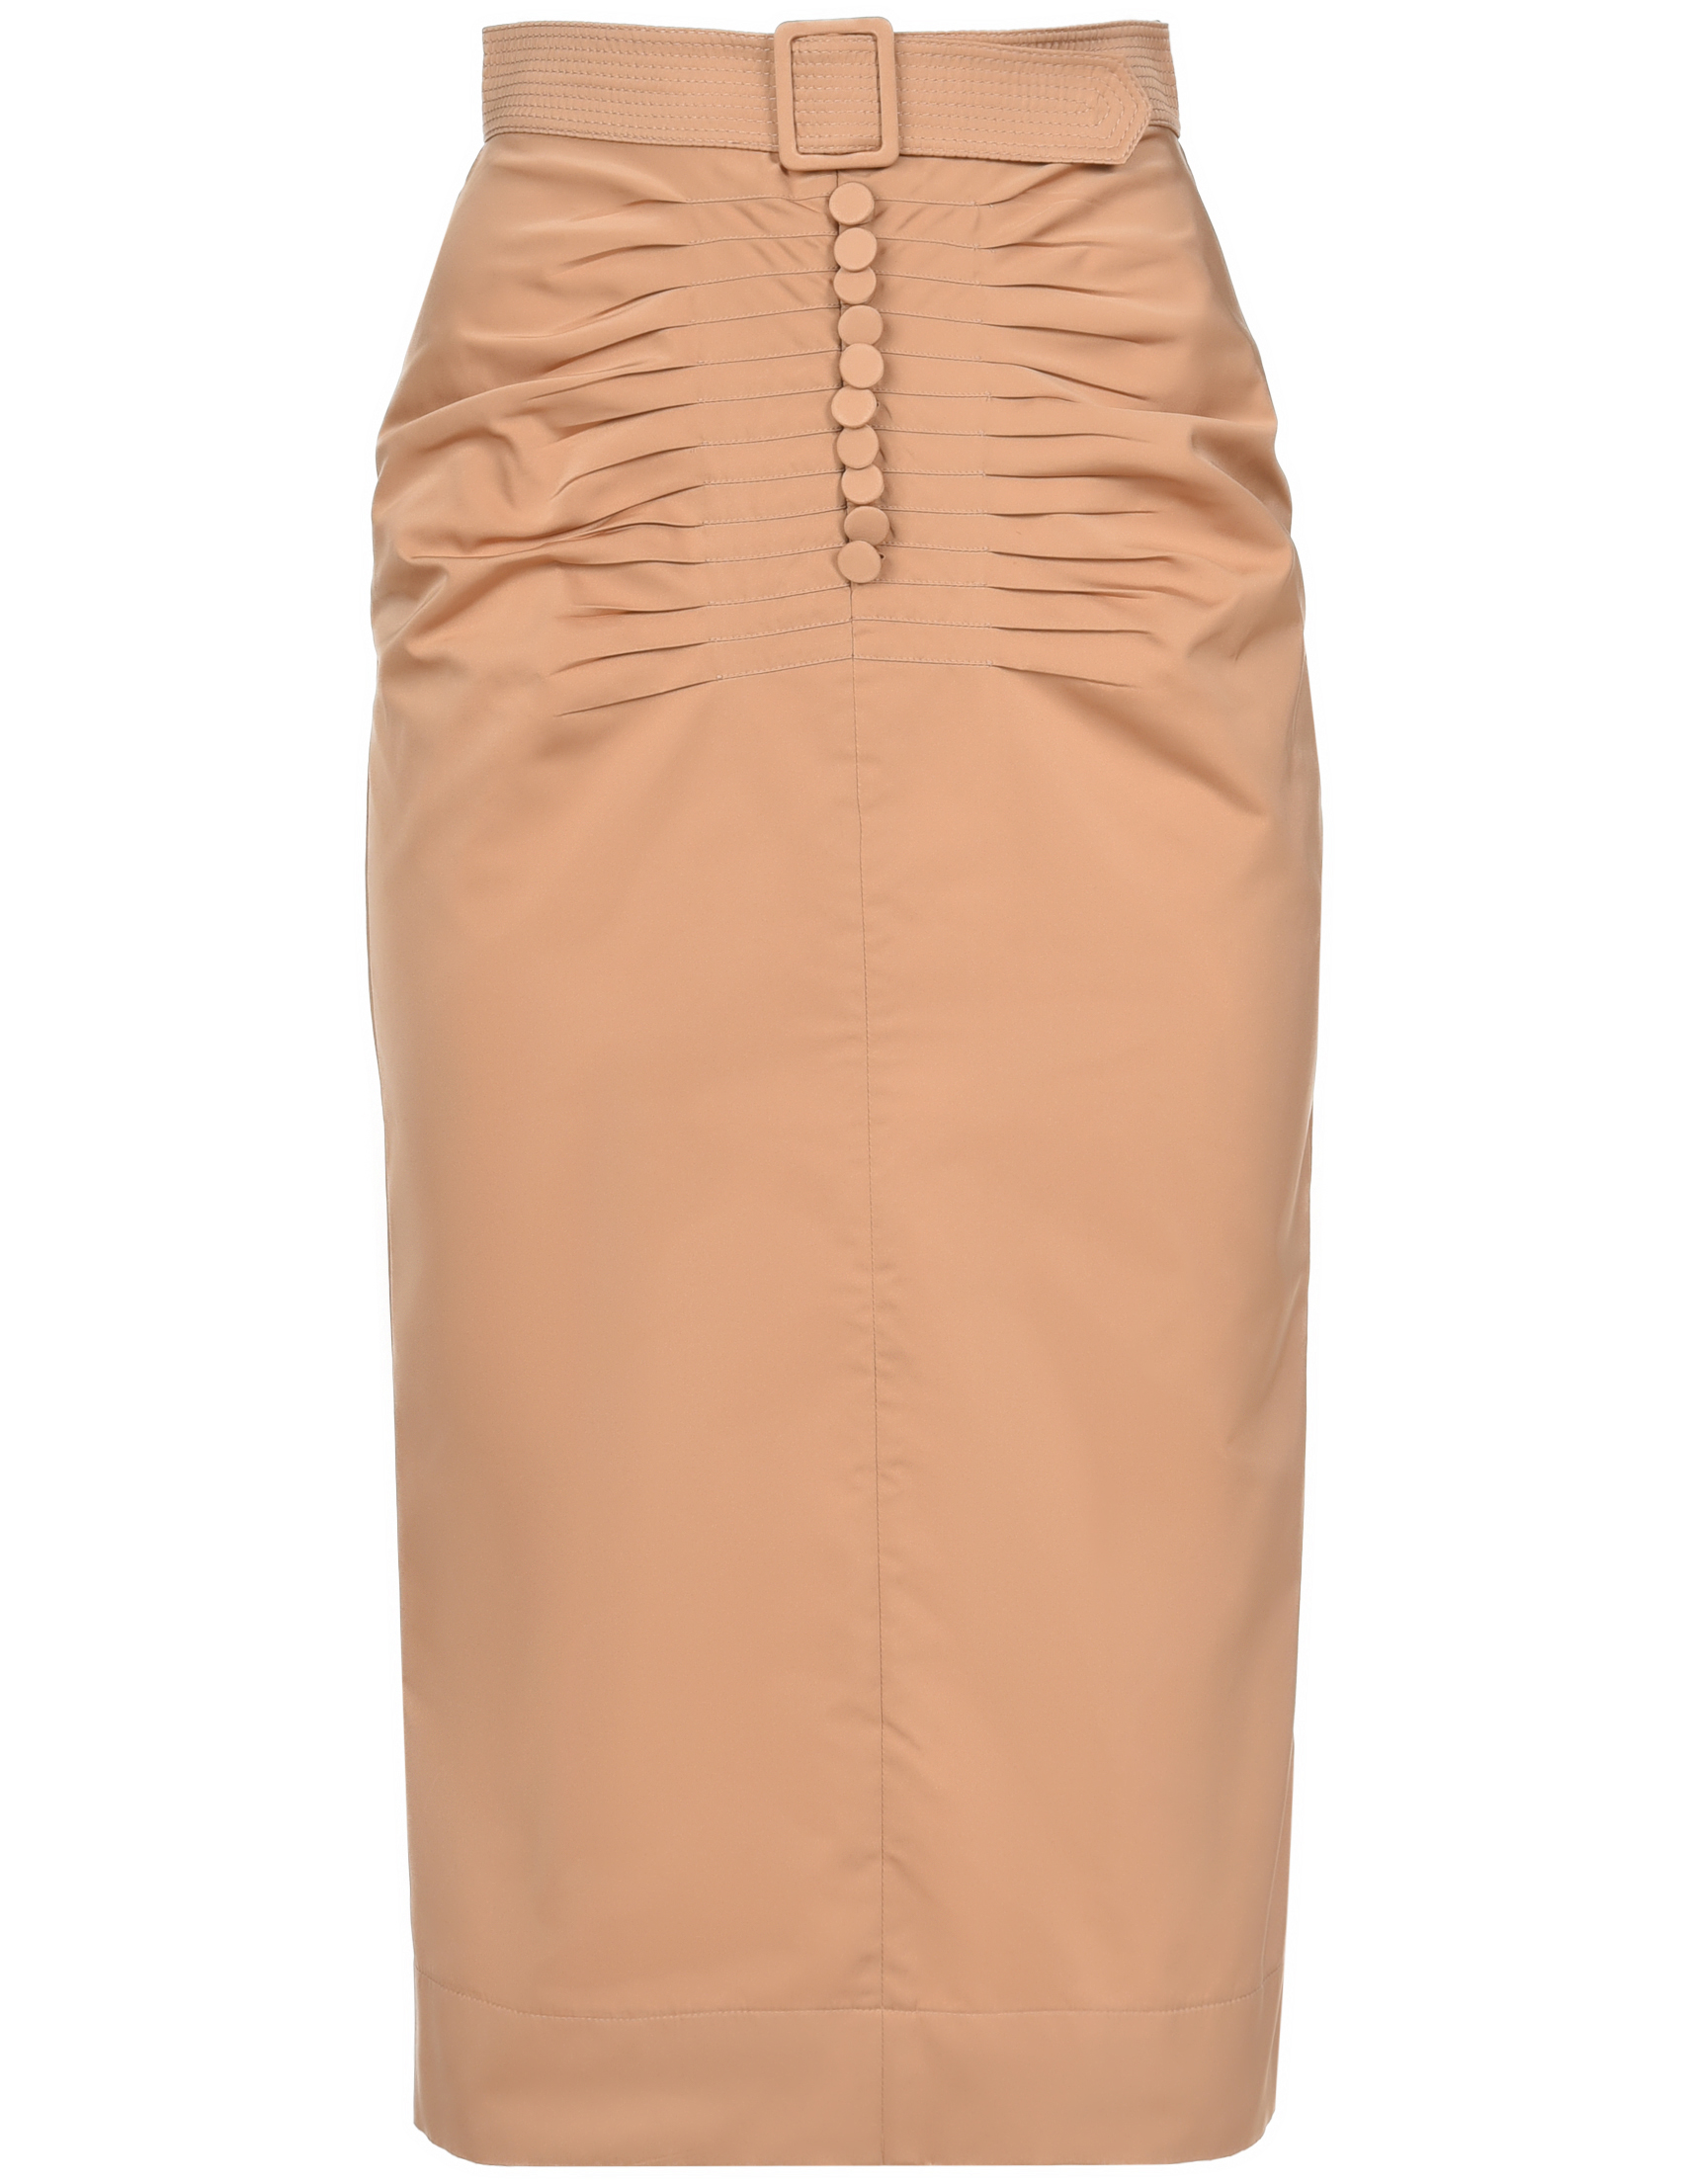 Женская юбка N21 041-5184-4162_beige